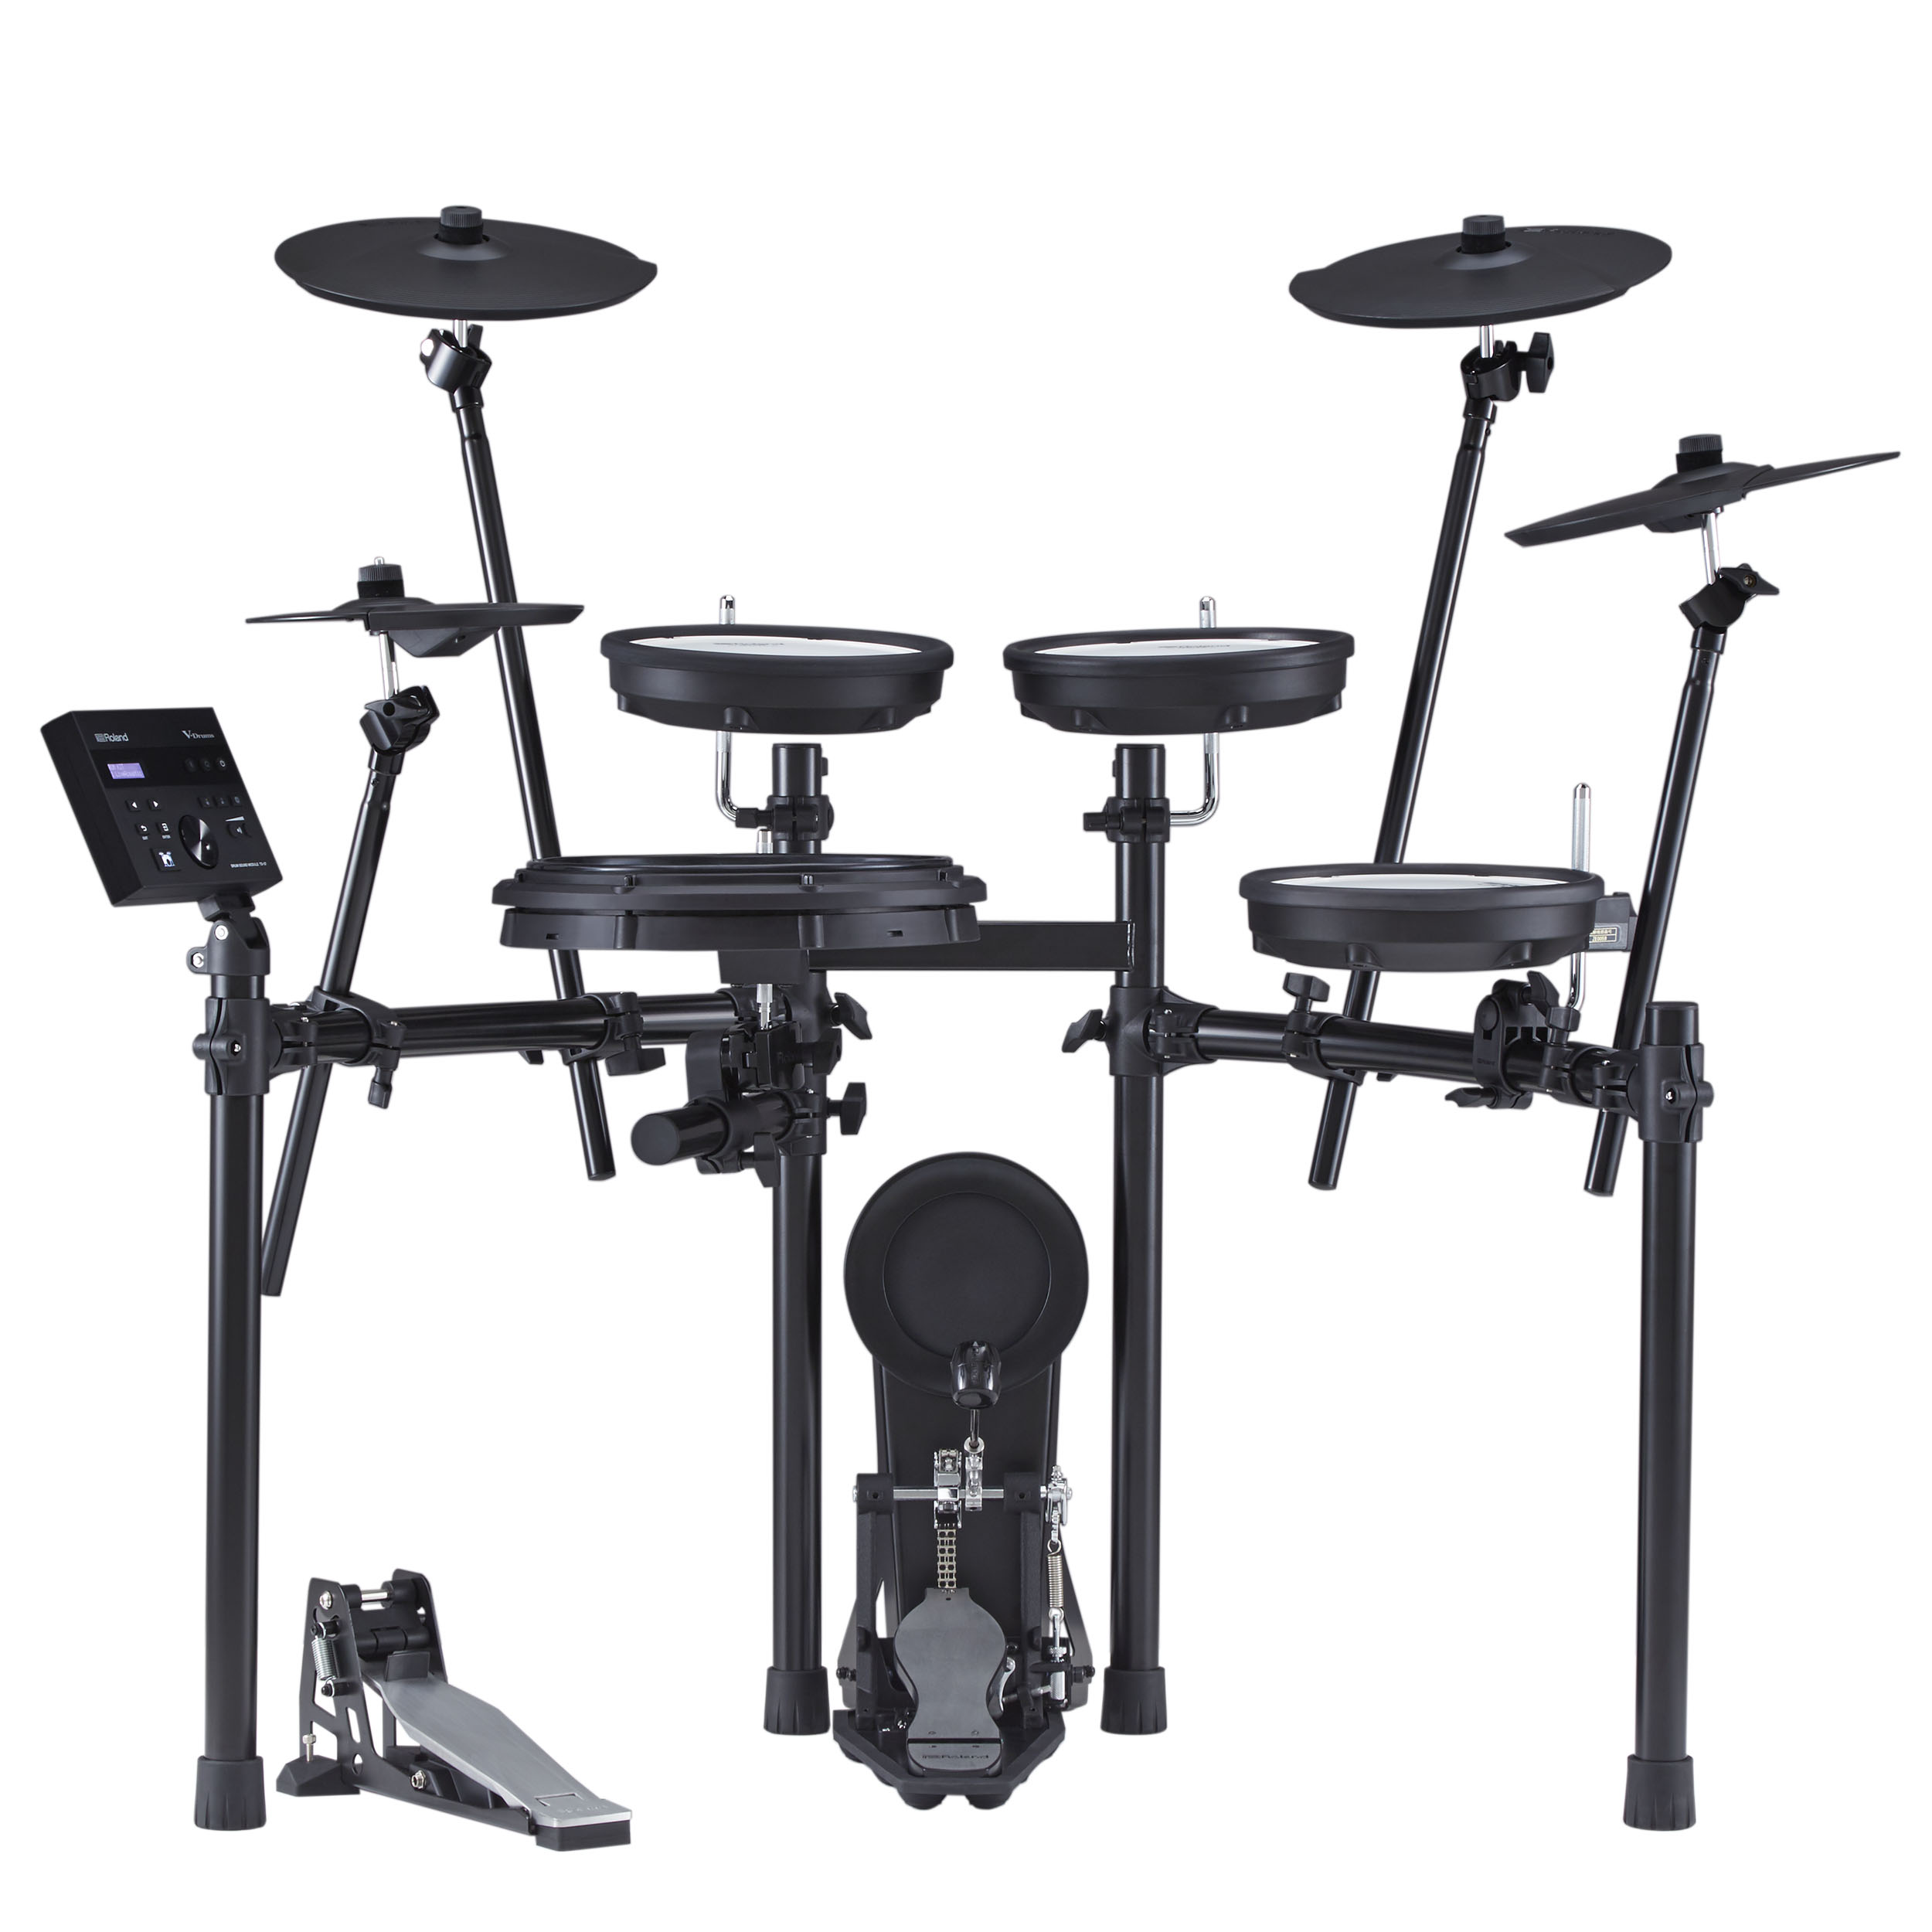 Isaac Lee Thorough Roland TD-07KX V-Drums Kit Electronic drum kit & set